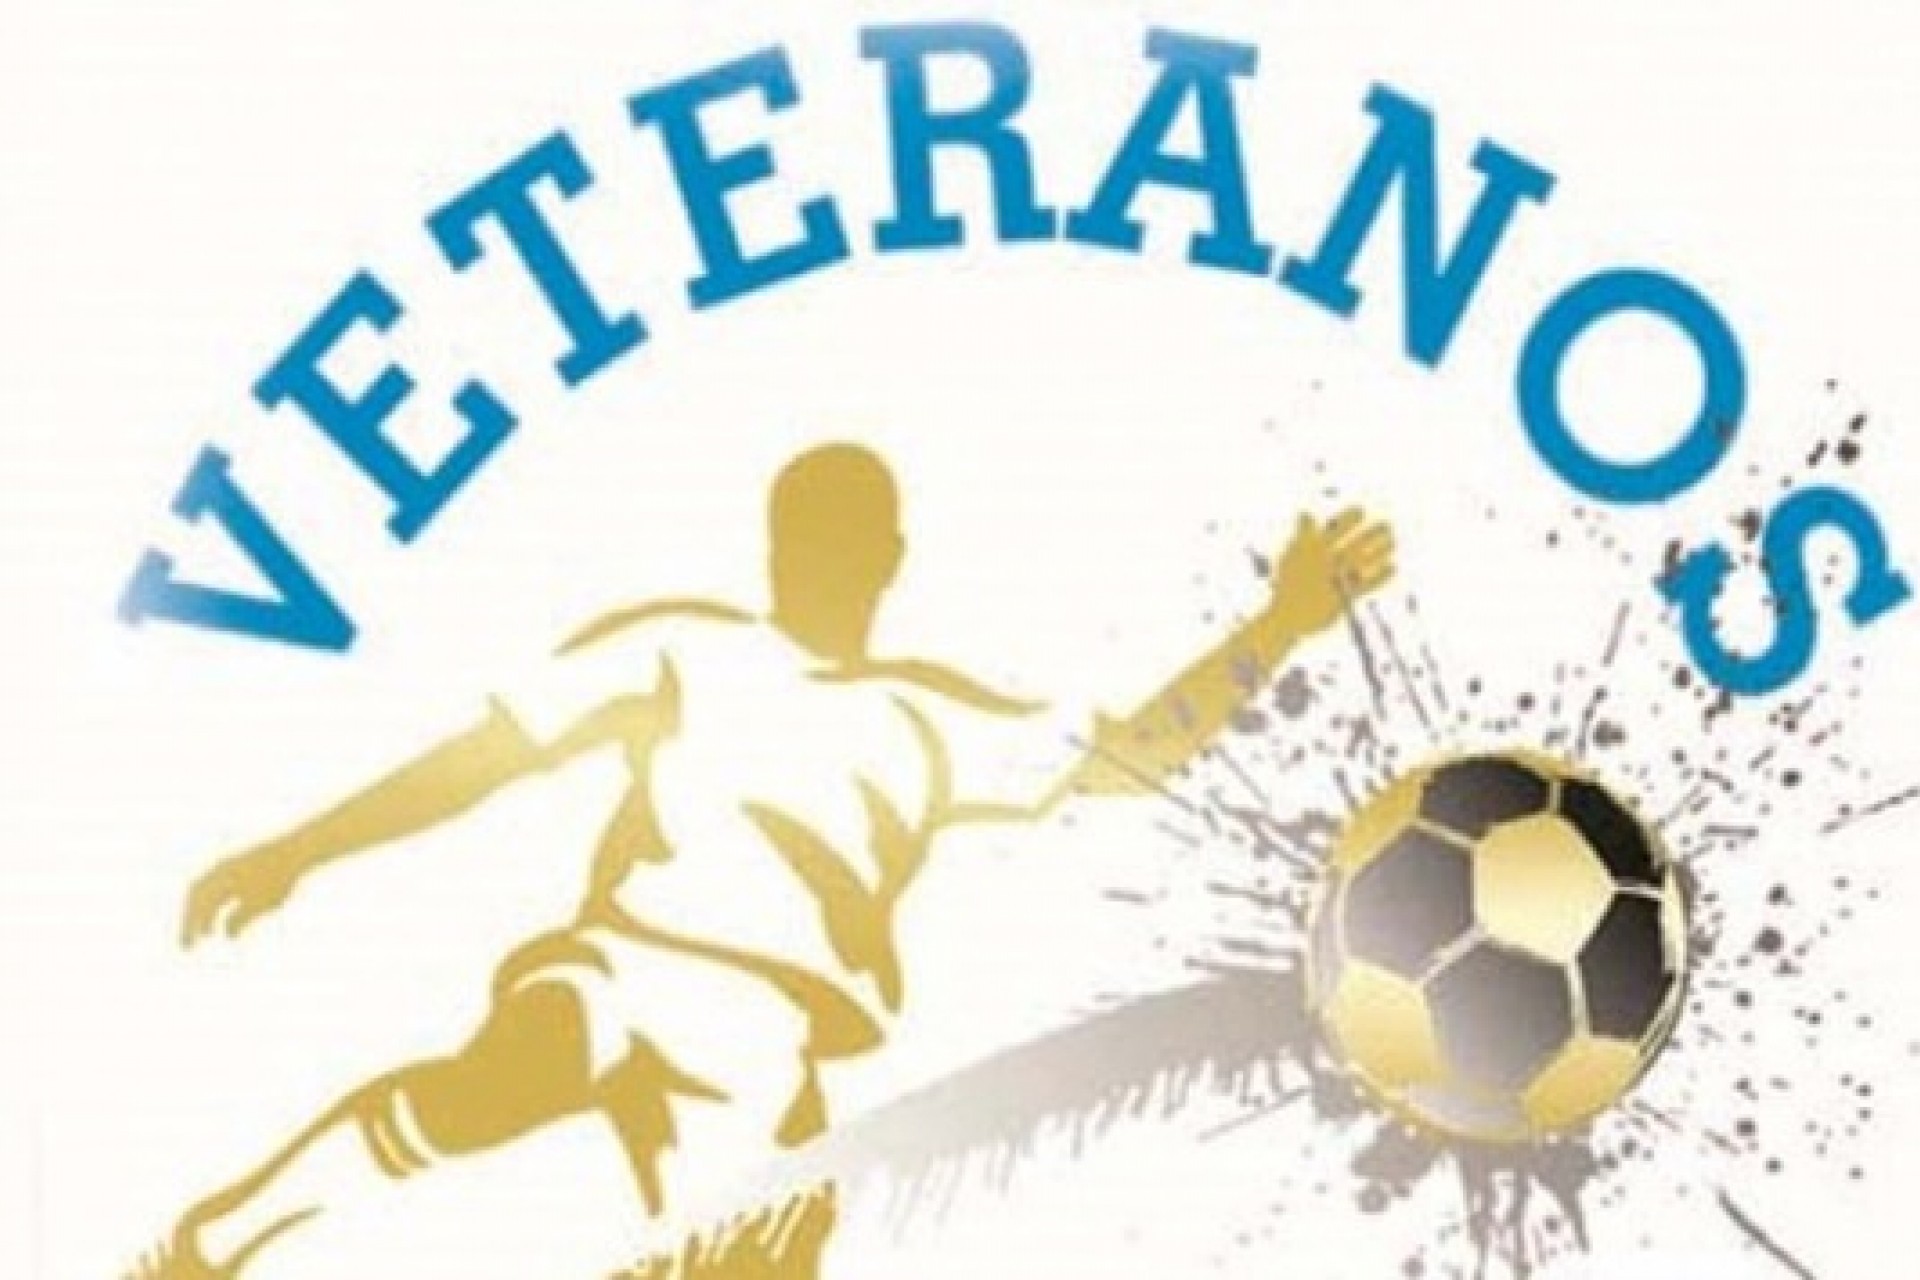 Decisão do futebol de campo veteranos em Missal começa nesta terça-feira